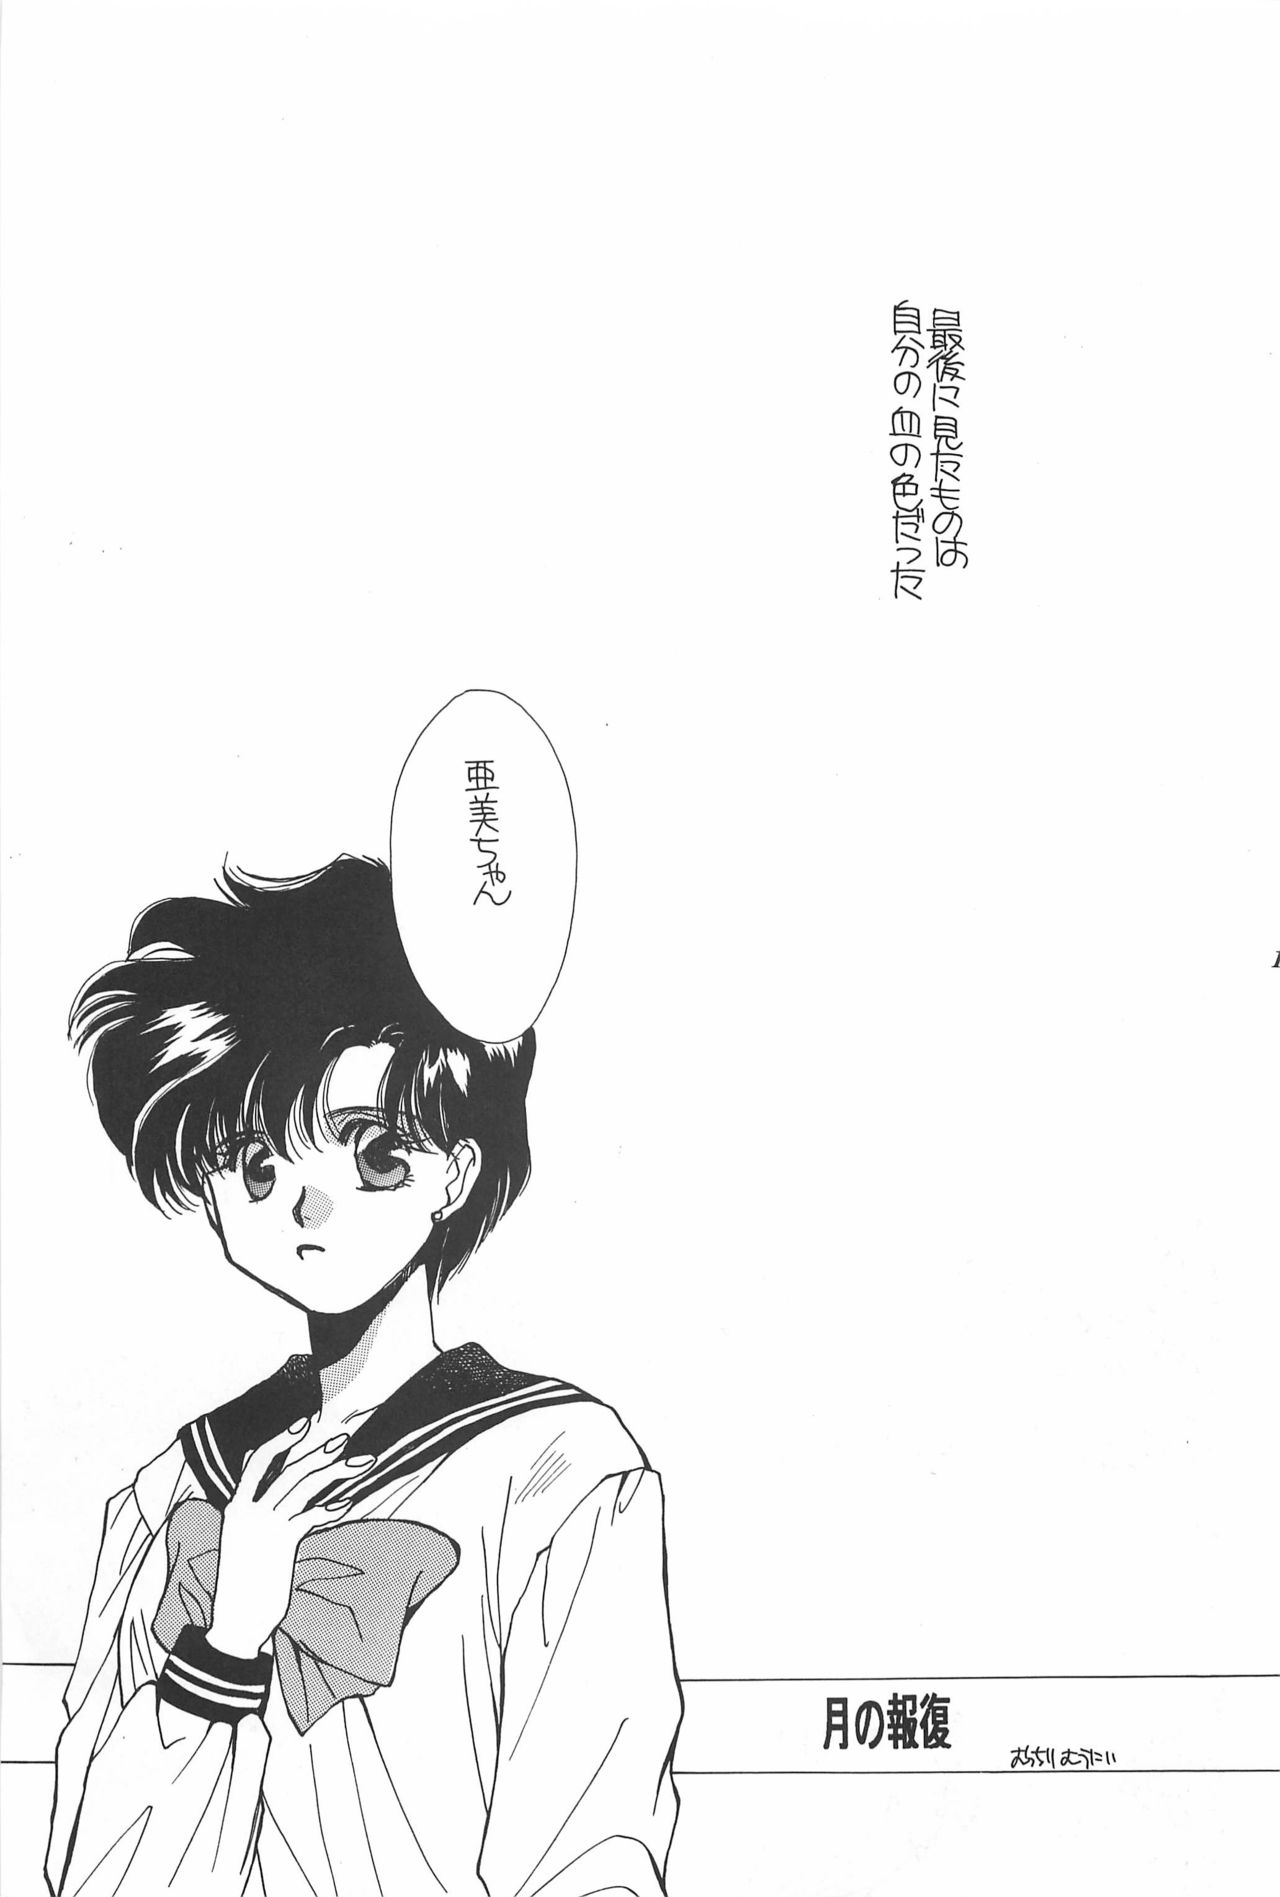 [Hello World (Muttri Moony)] Kaze no You ni Yume no You ni - Sailor Moon Collection (Sailor Moon) 174